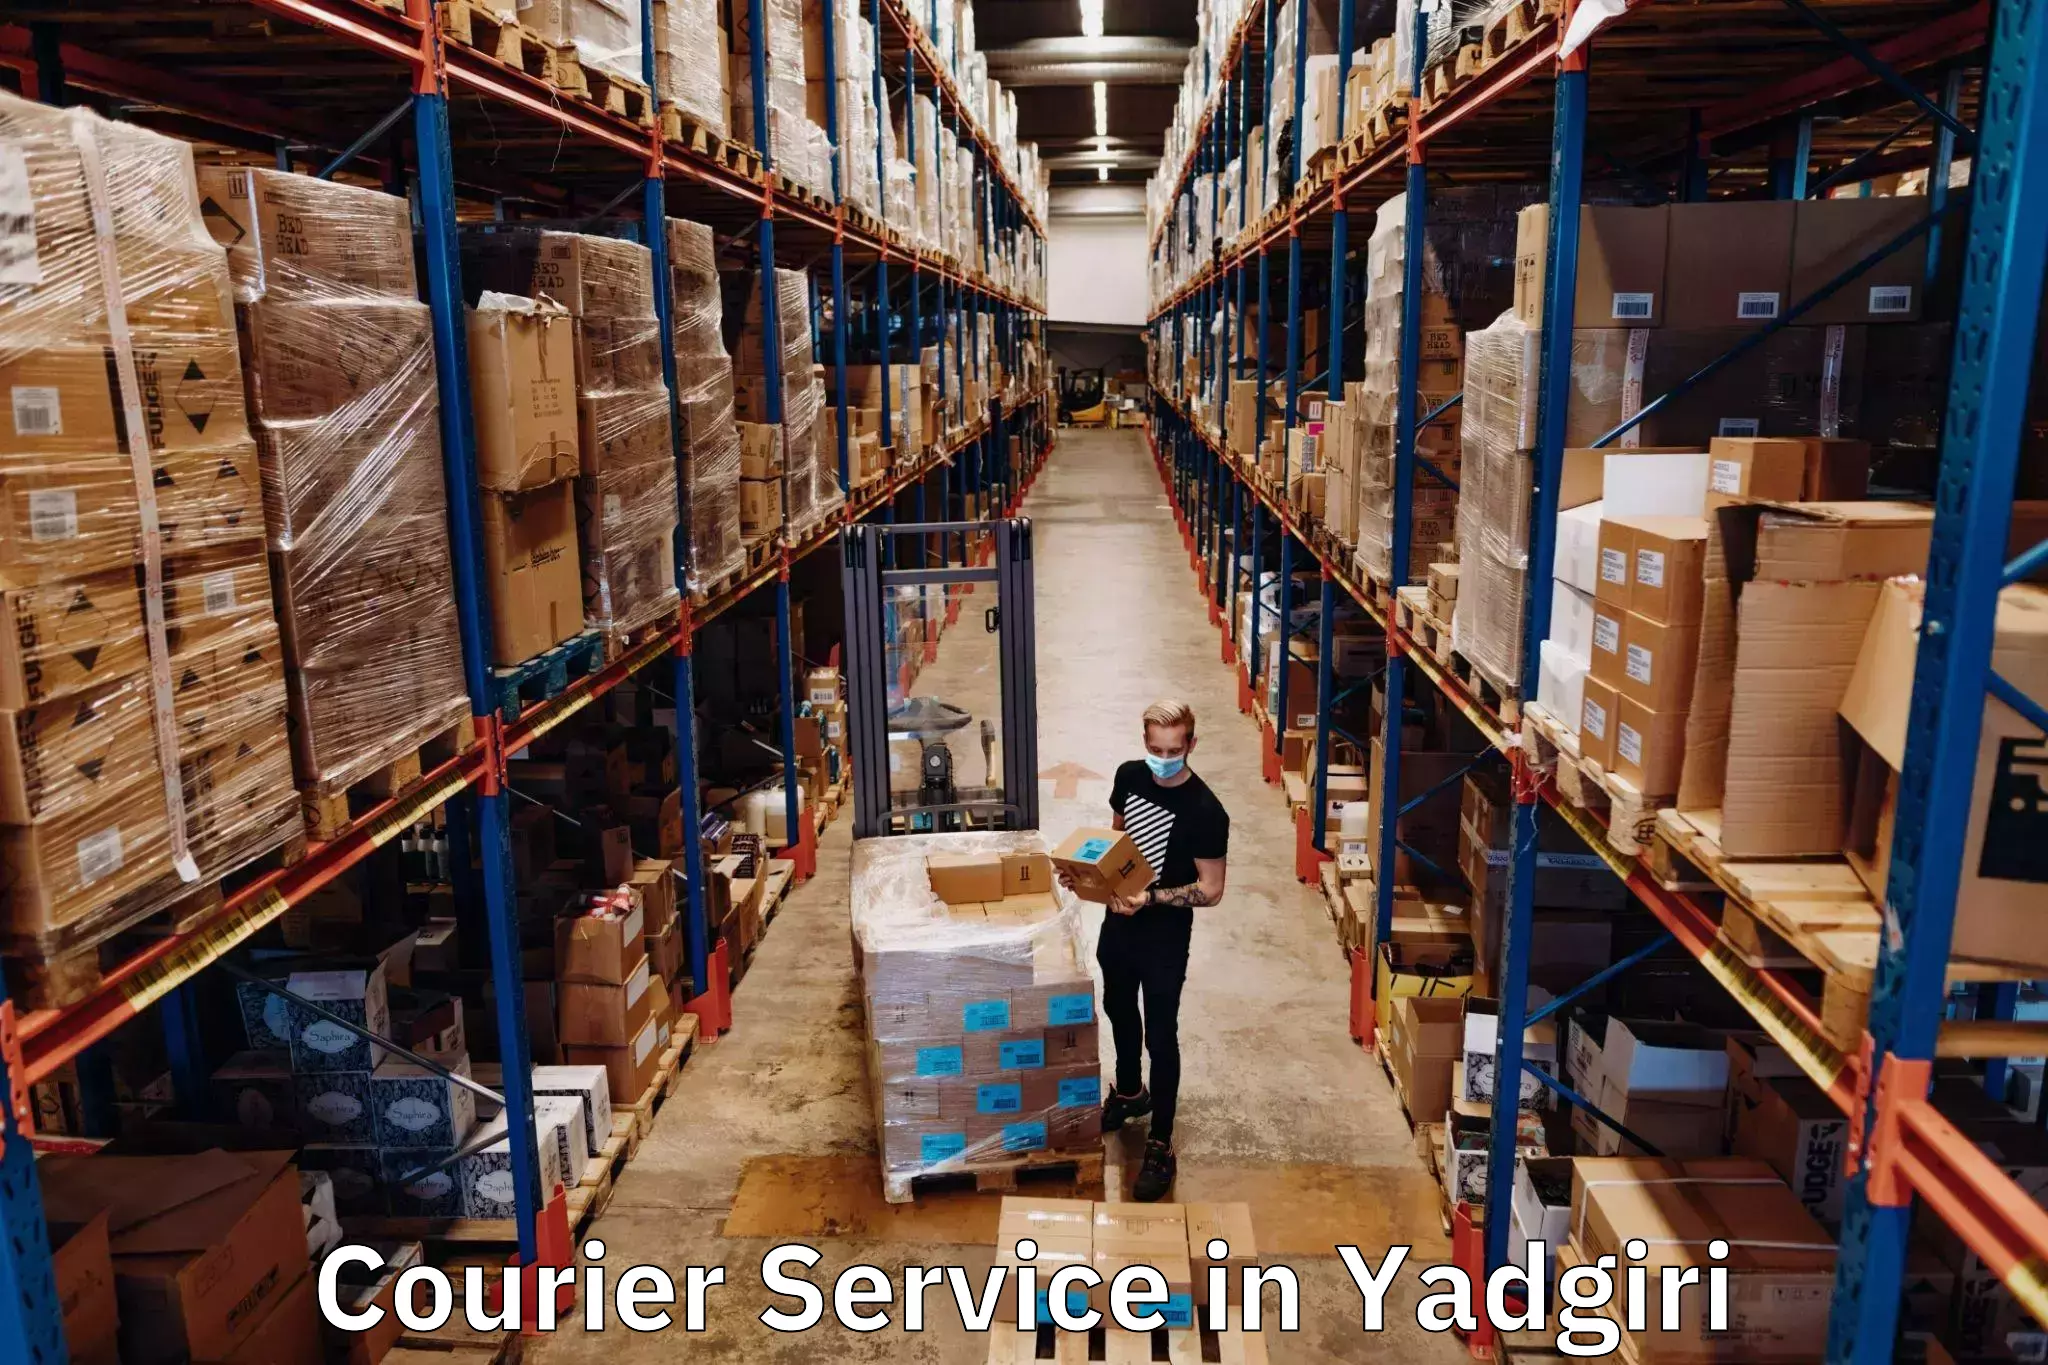 Efficient freight service in Yadgiri